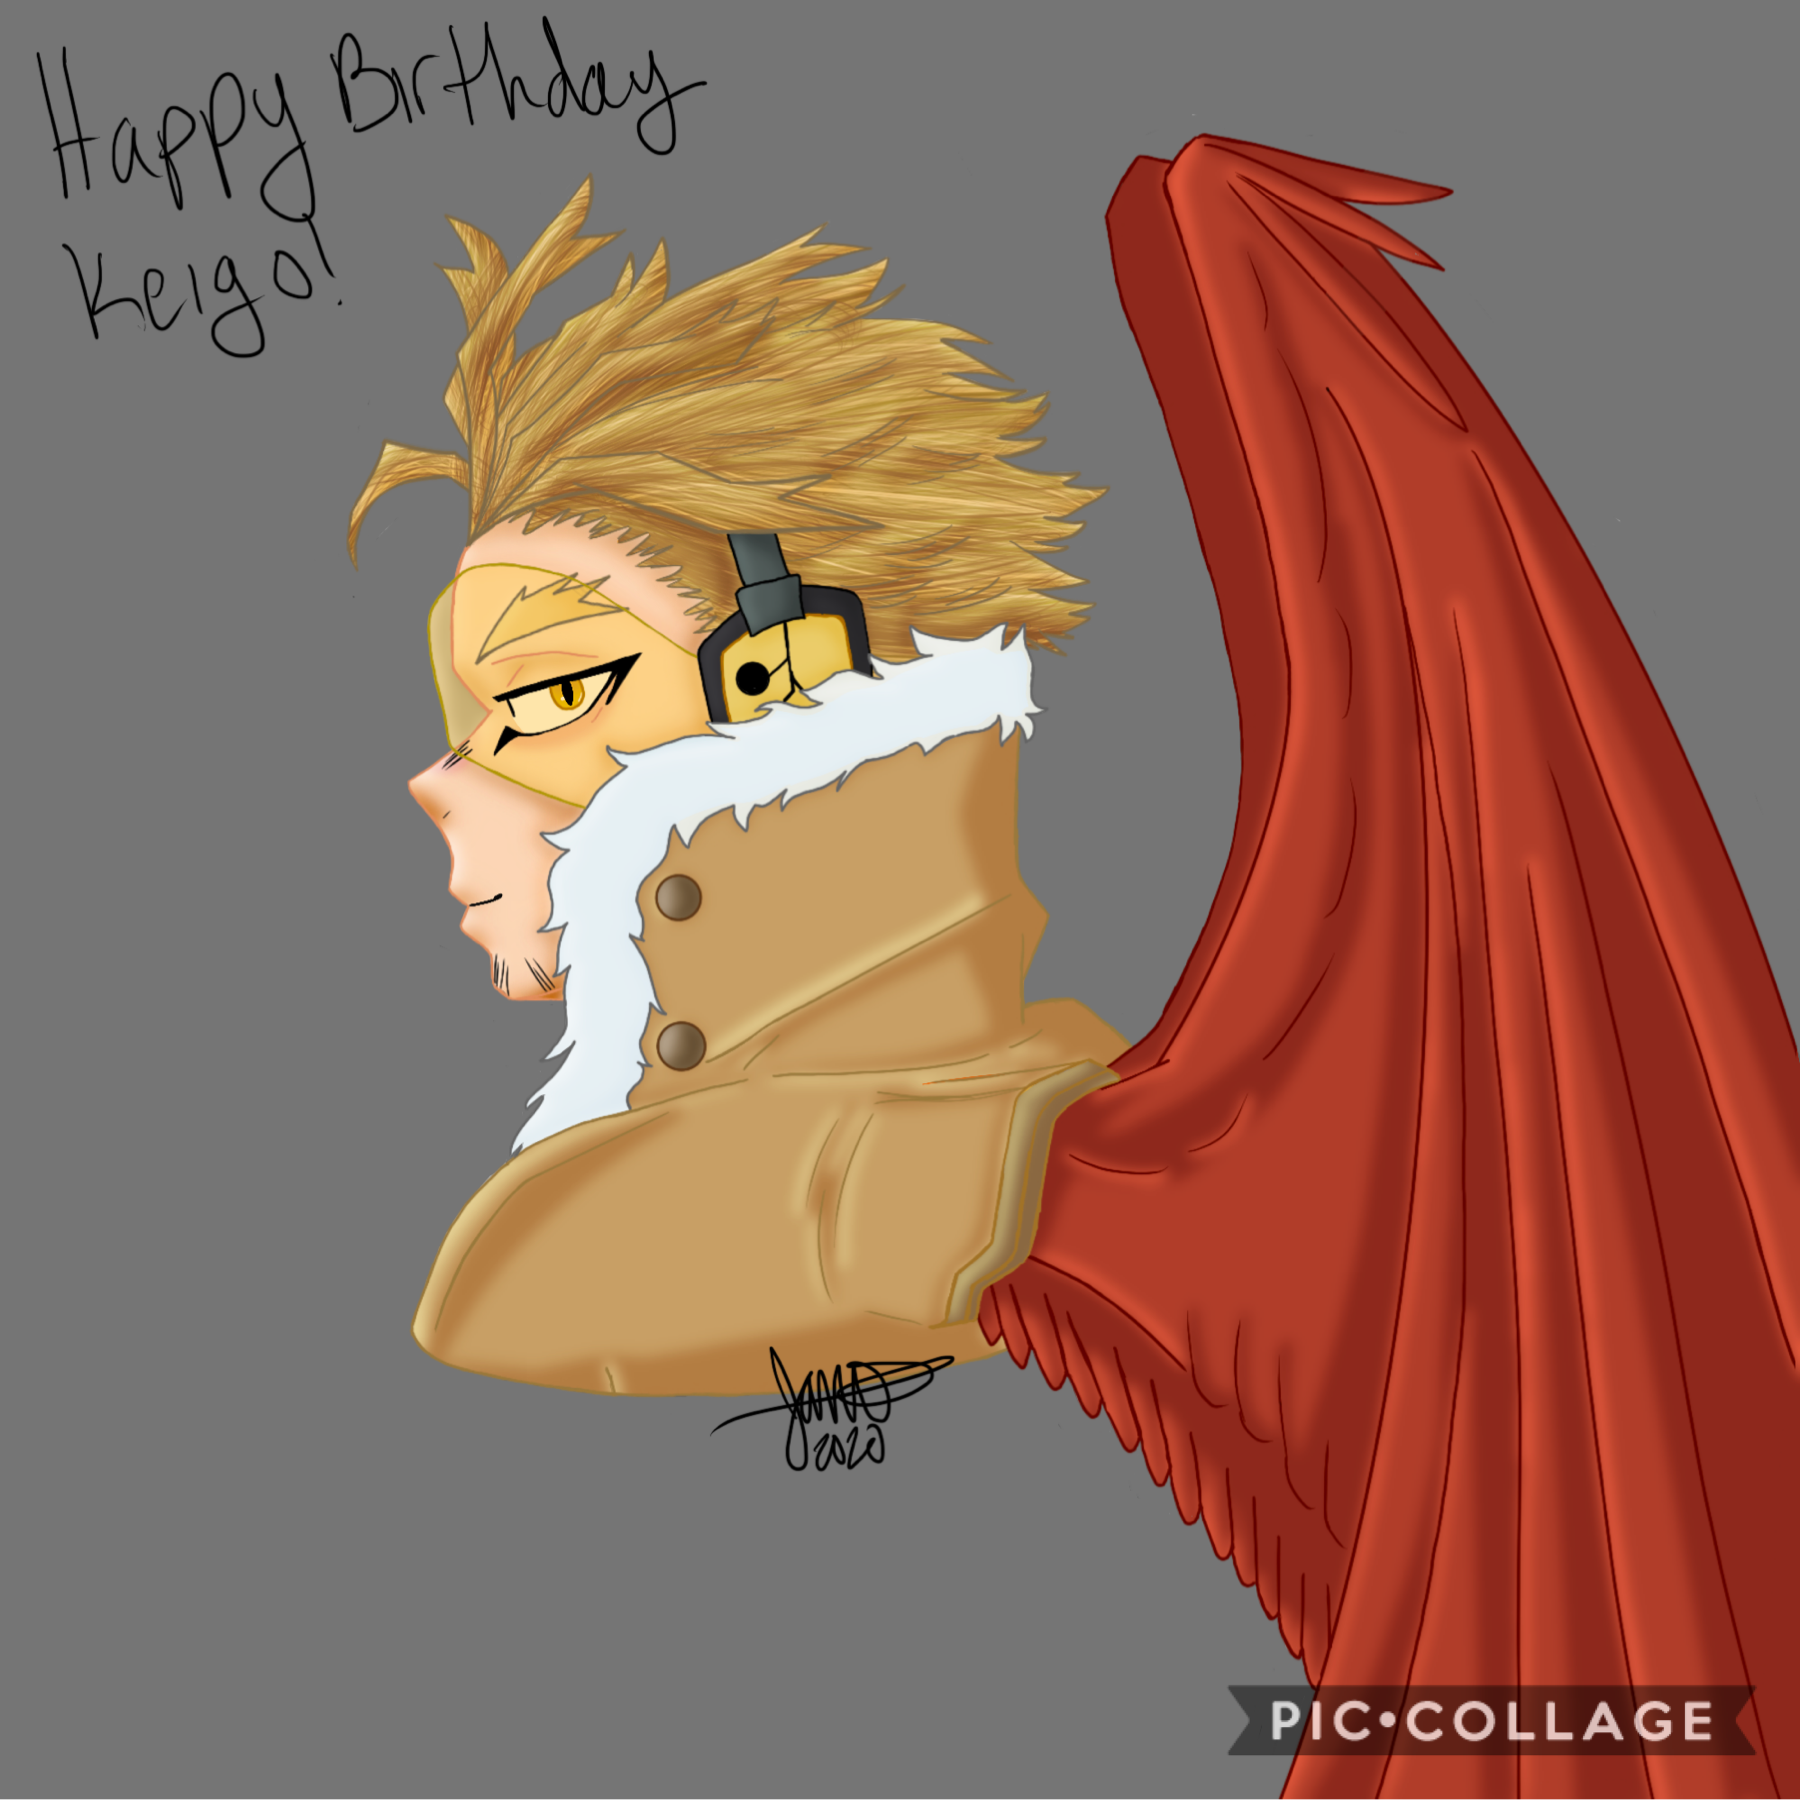 today was Hawks’ birthday so i drew him 